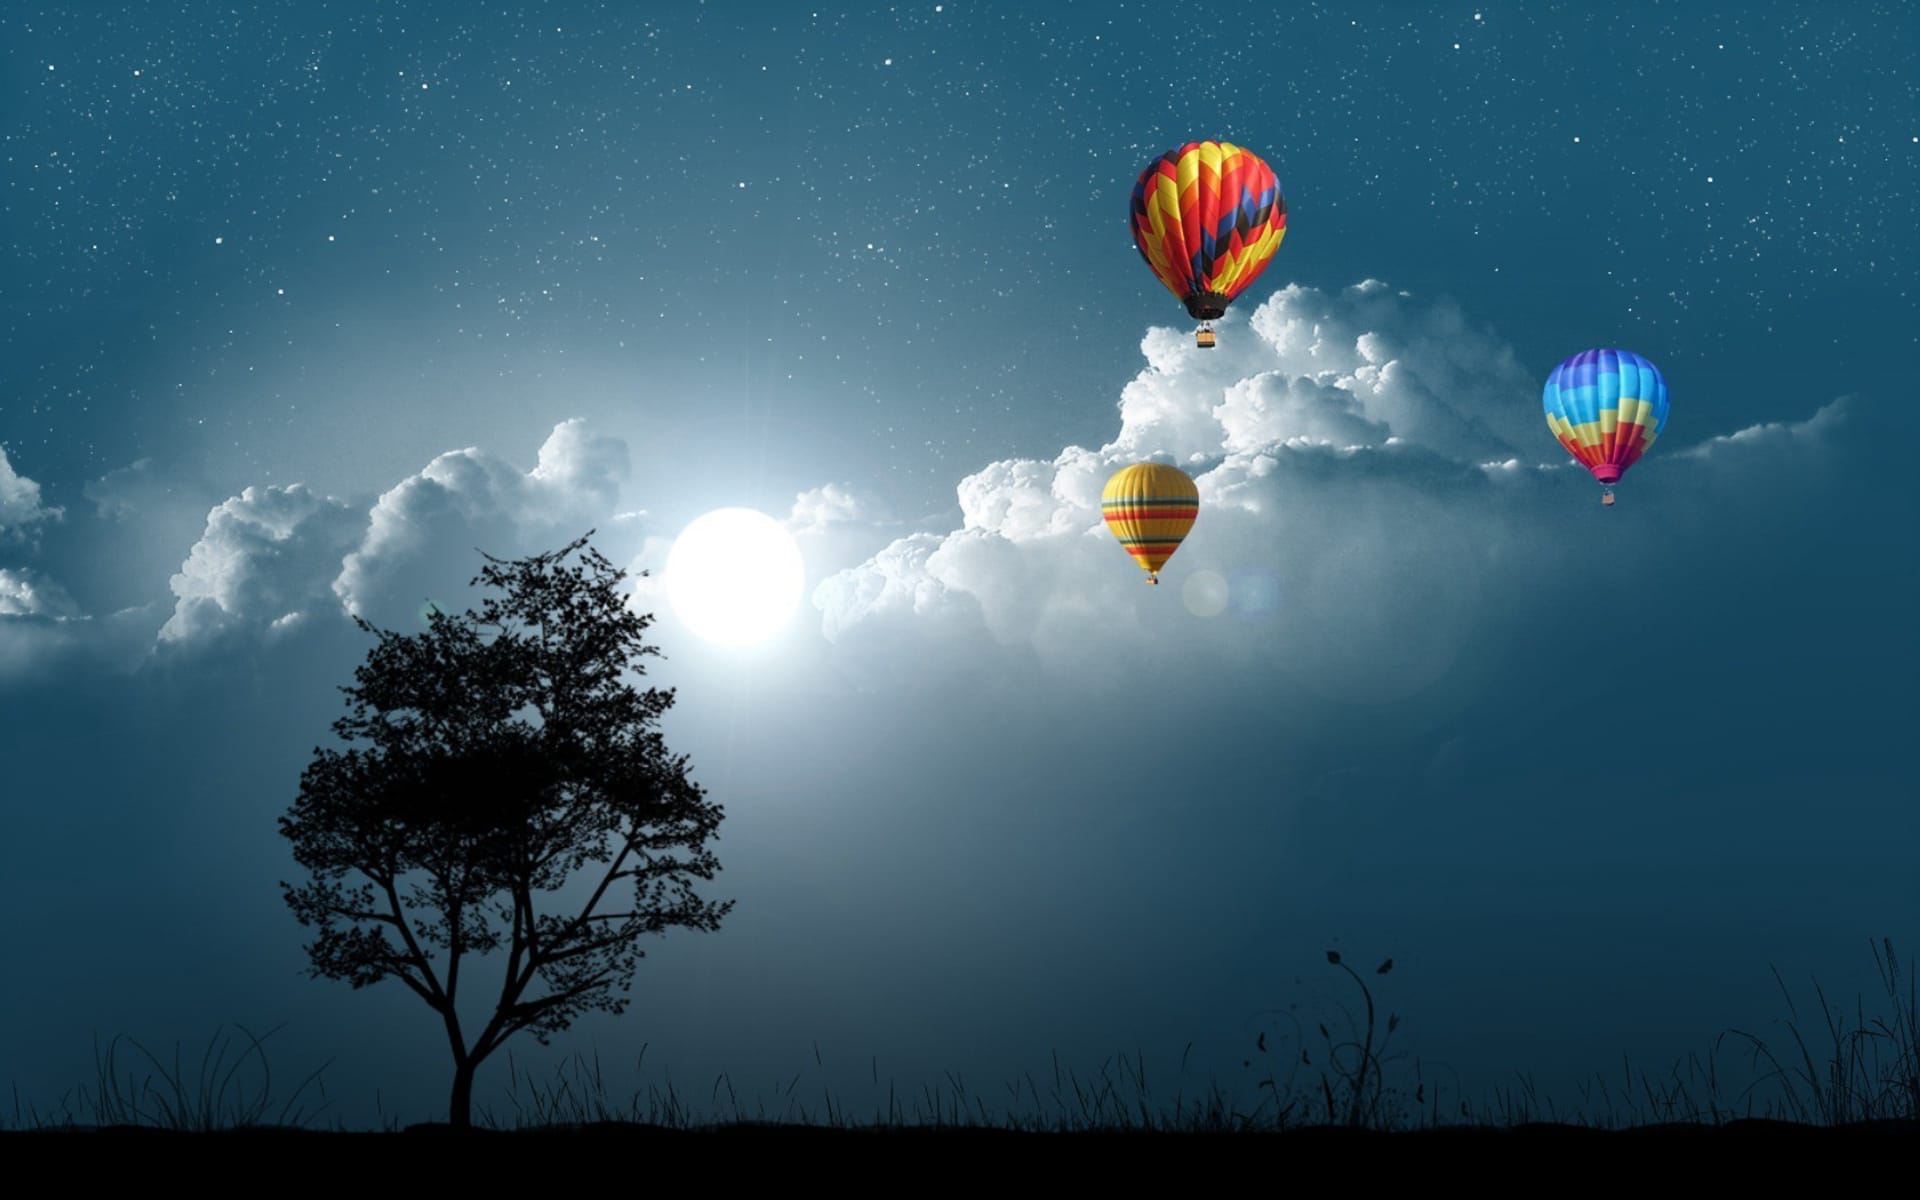 浪漫的热气球蓝天白云下缓缓飞翔图片壁纸